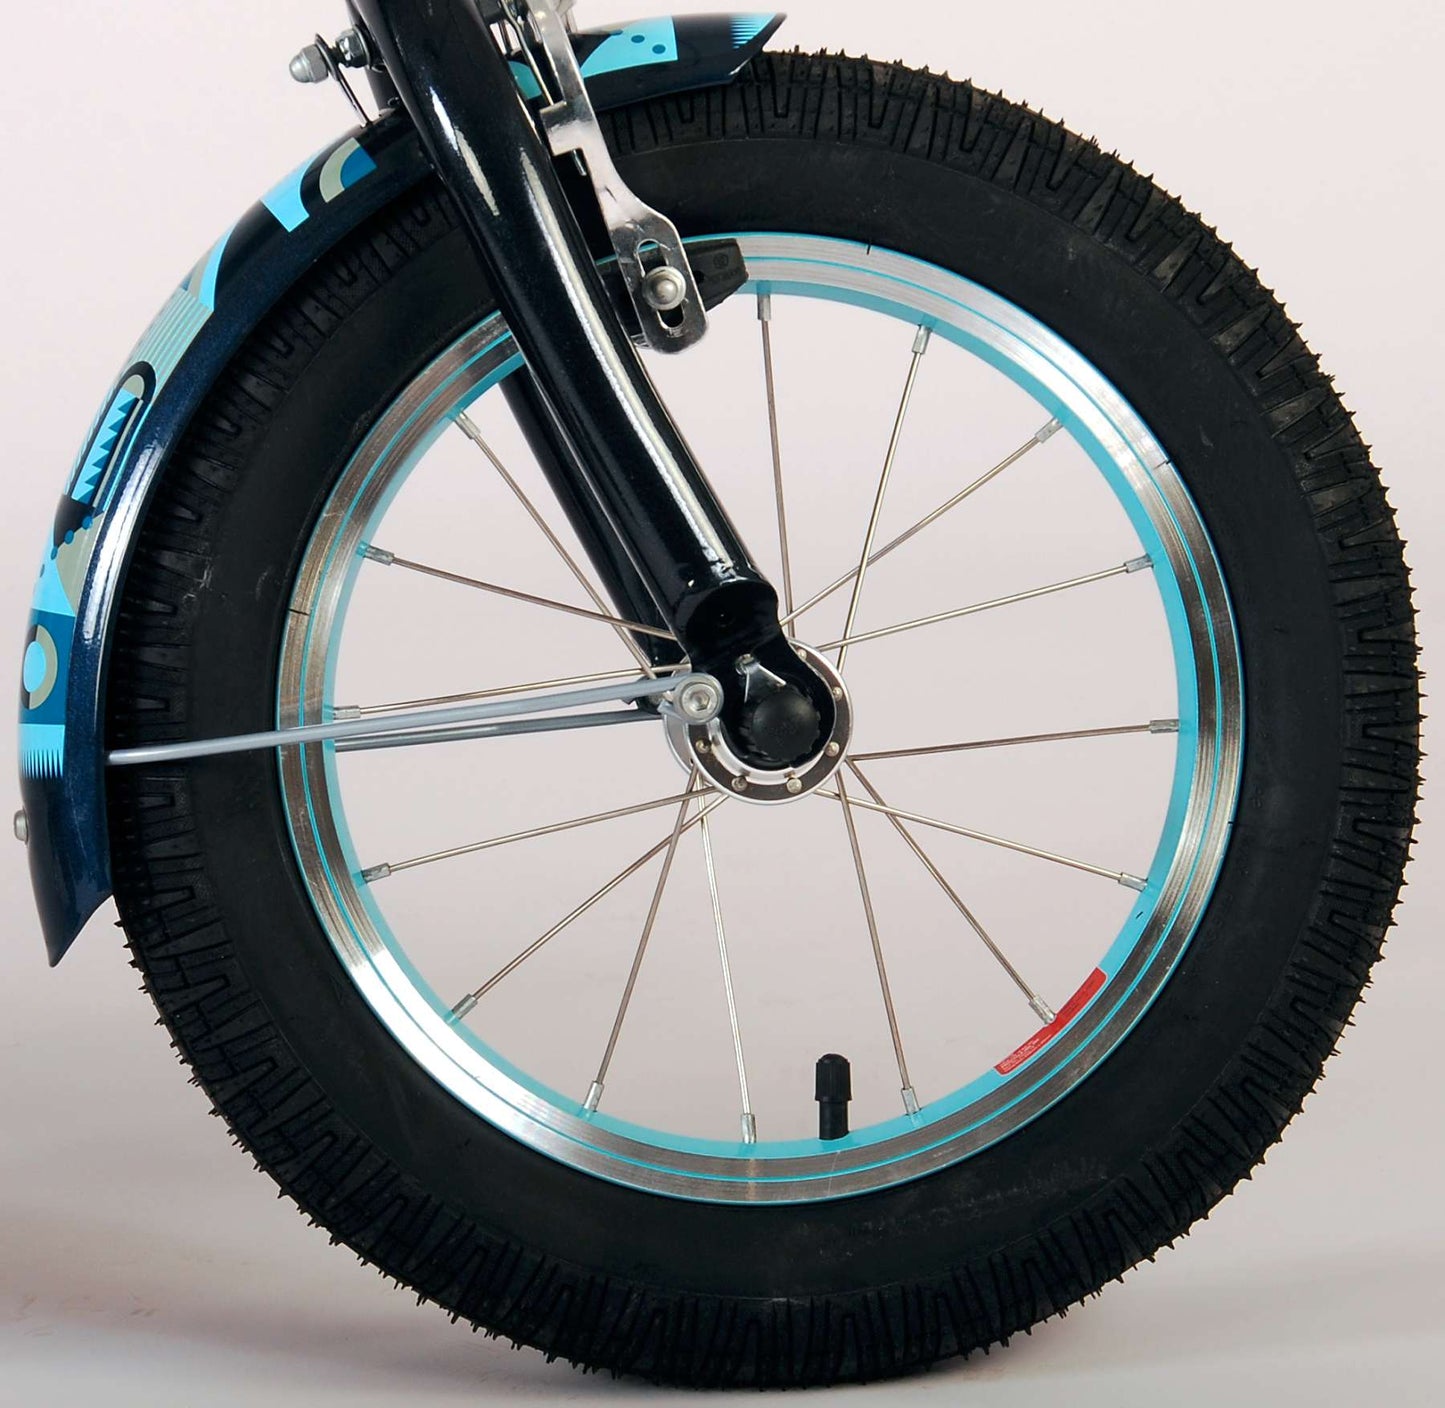 Volare Miracle Cruiser Bicycle para niños - Niños - 14 pulgadas - Matt Blue - Colección Prime